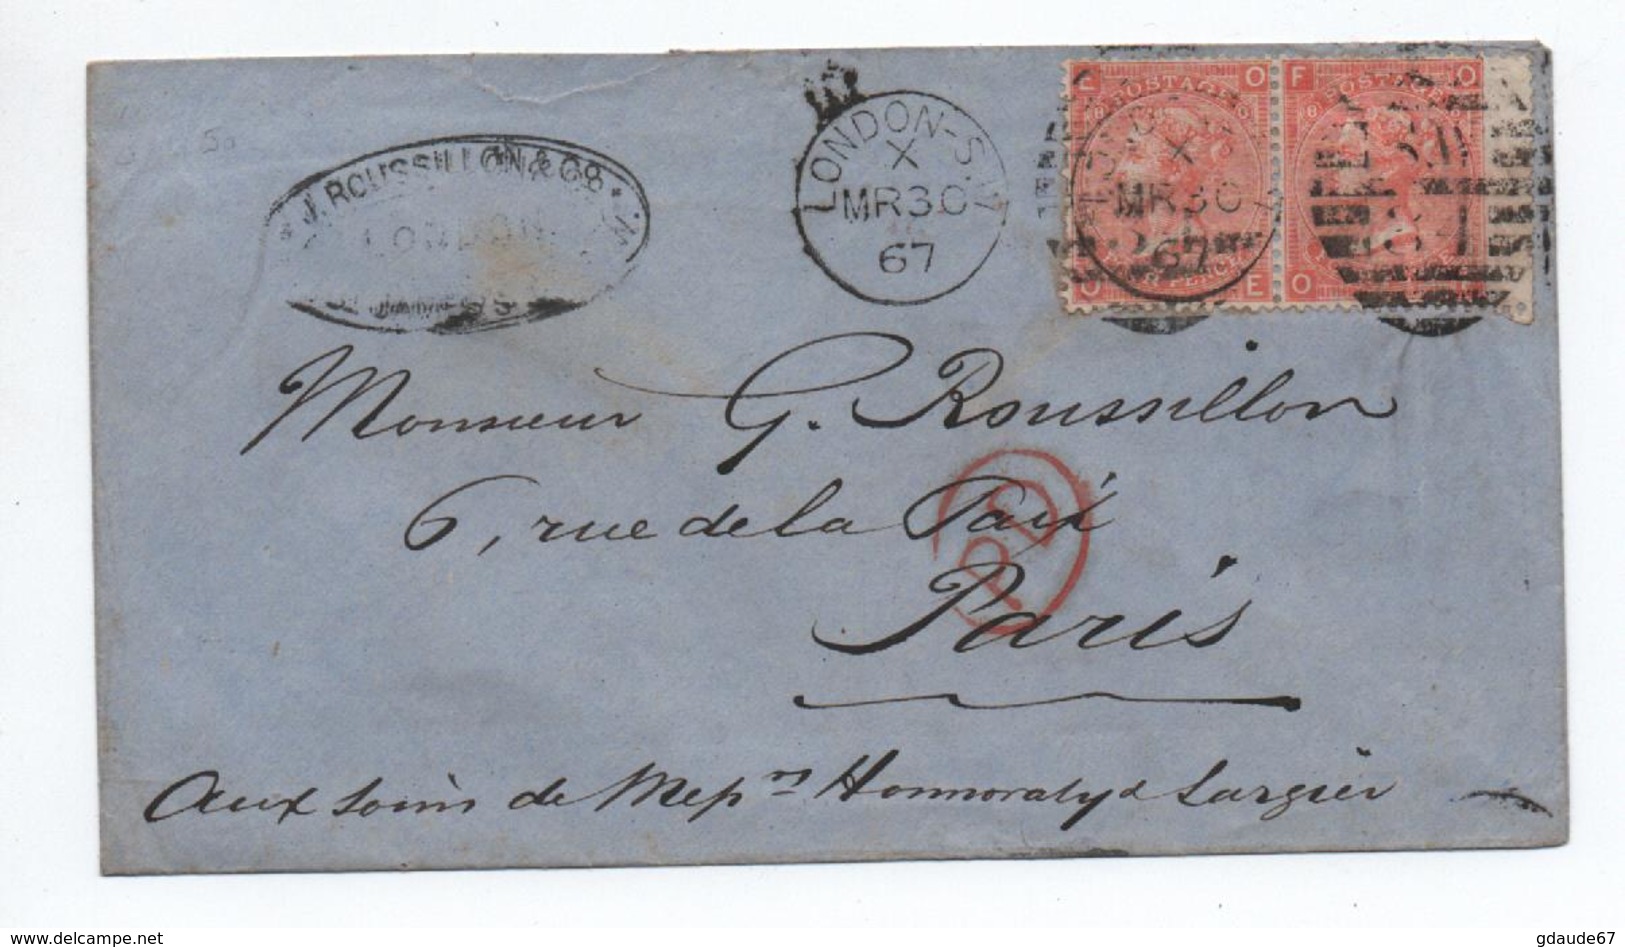 GRANDE BRETAGNE - 1867 - ENVELOPPE Avec PAIRE YVERT N° 32 Pour PARIS - Marcophilie